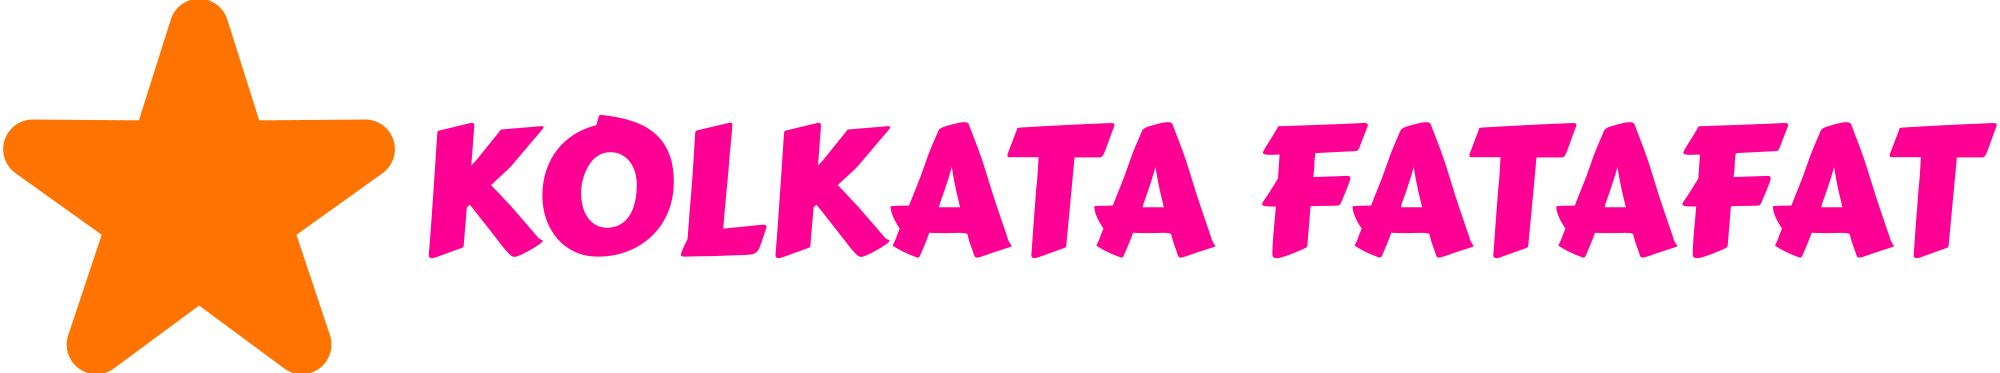 Star Kolkata Fatafat